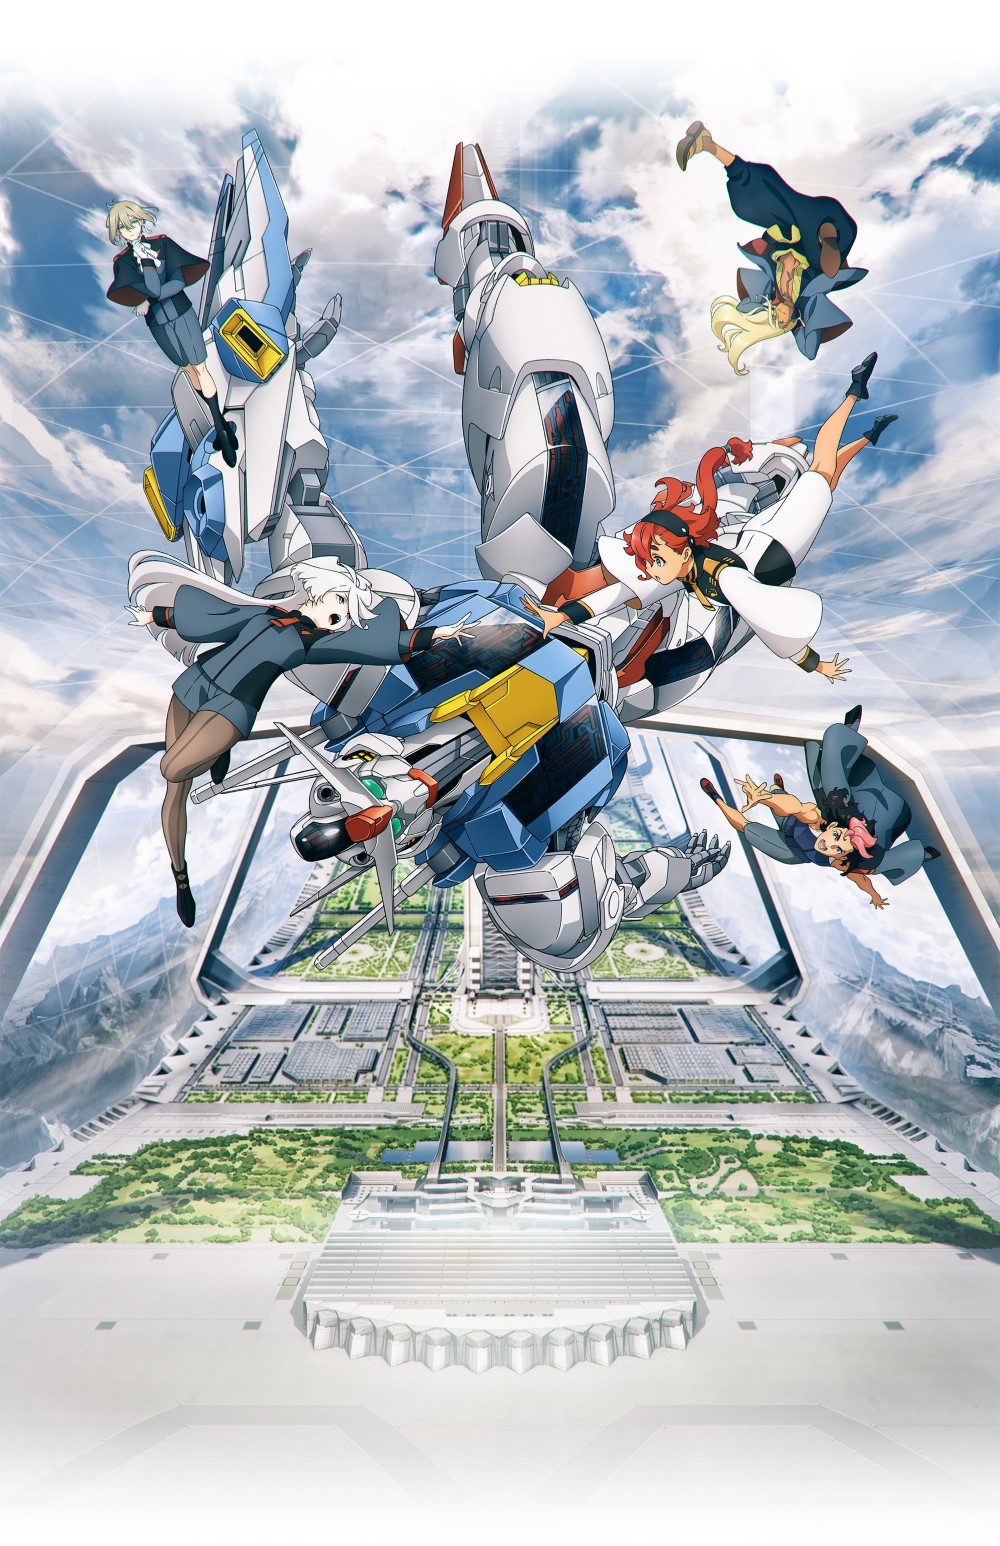 【喵萌奶茶屋】[机动战士高达 水星的魔女 序幕/Mobile Suit Gundam THE WITCH FROM MERCURY PROLOGUE][先行版][1080p][简体][v2][招募翻译]